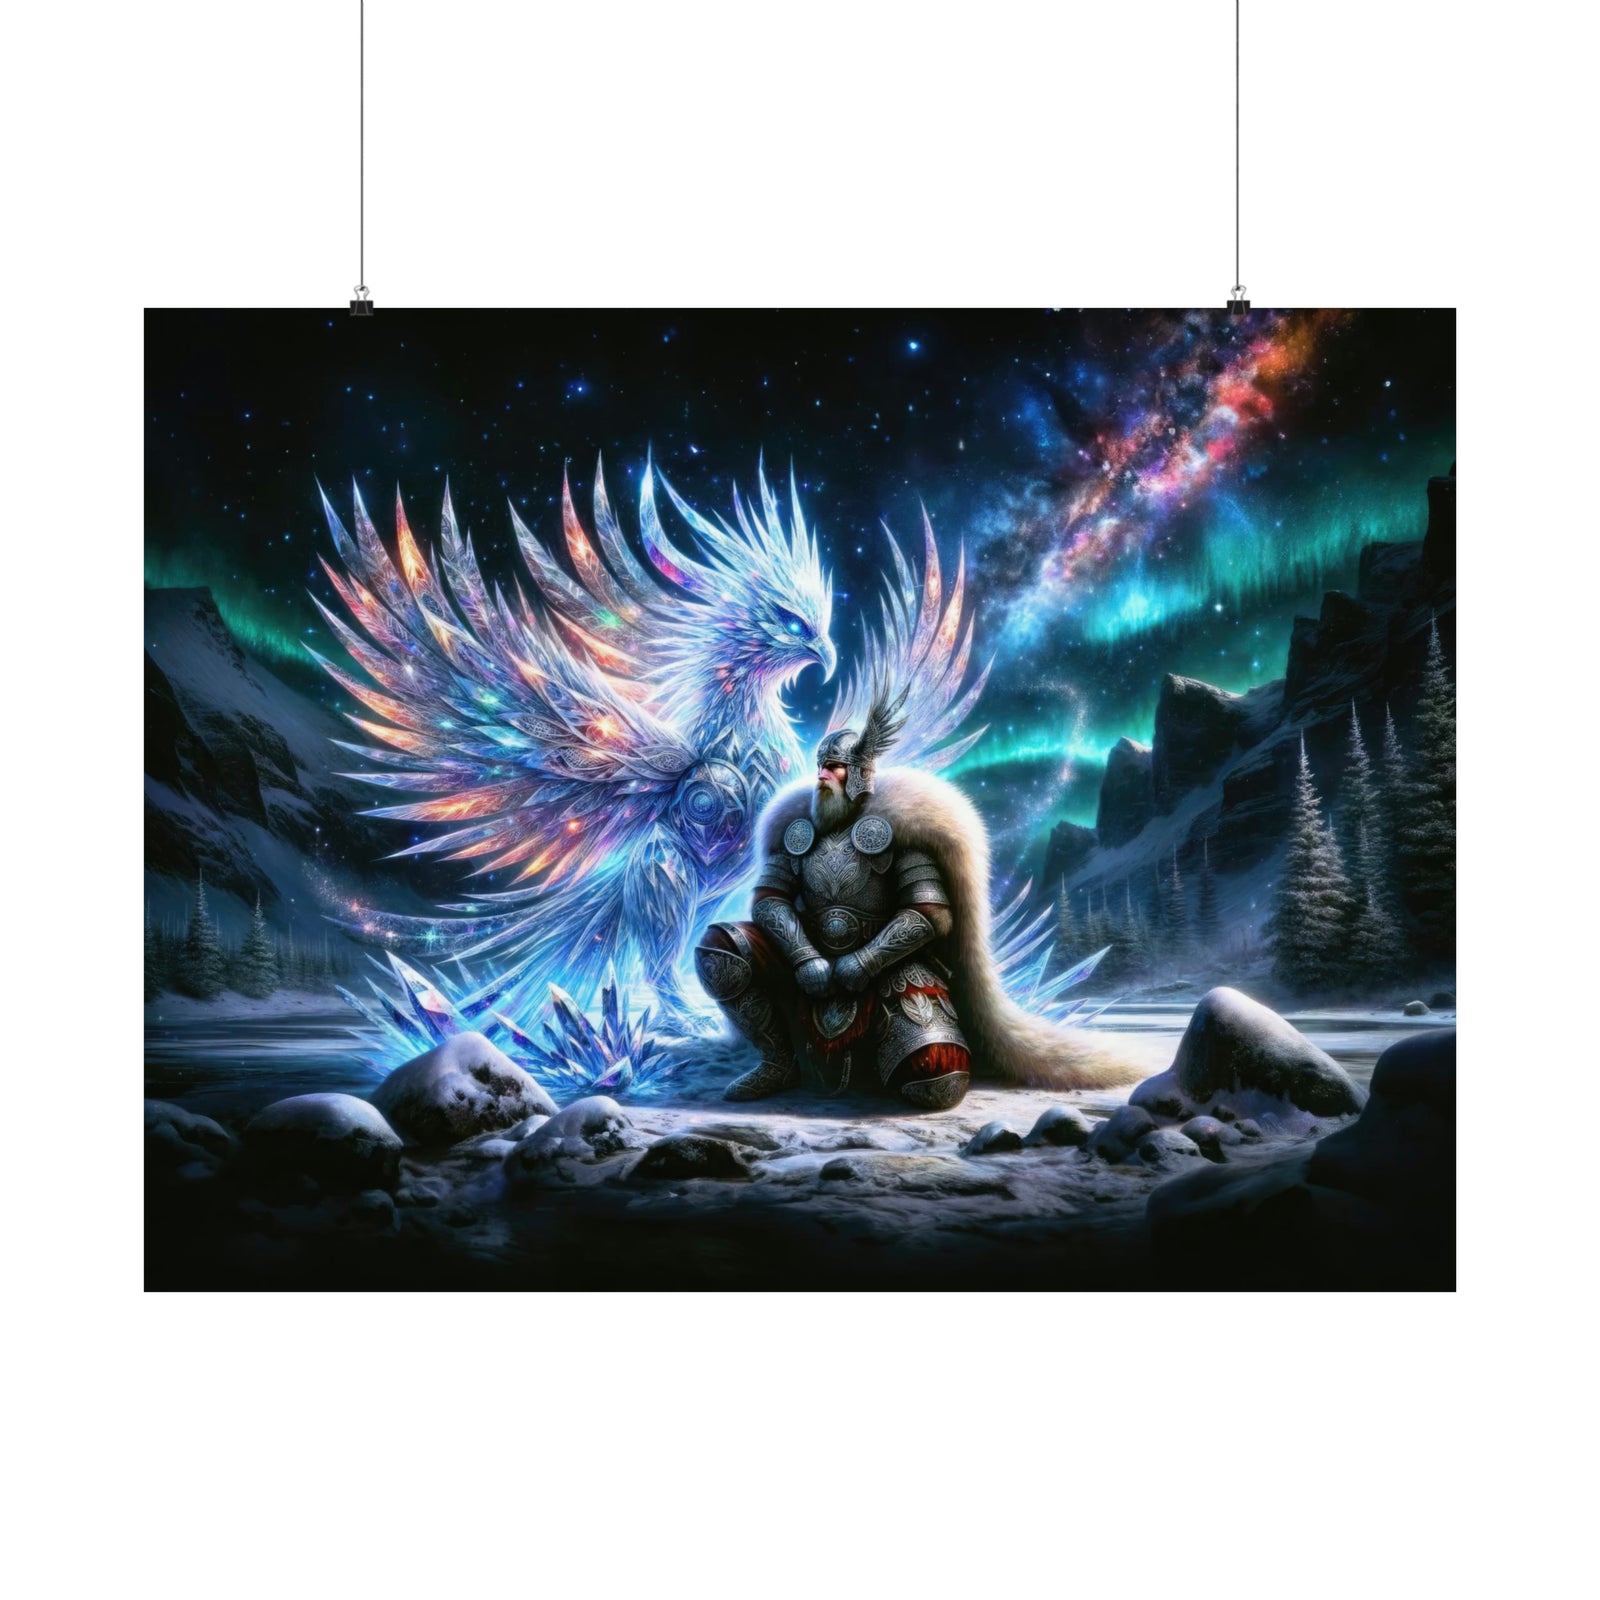 Cosmic Guardian's Vigil Poster